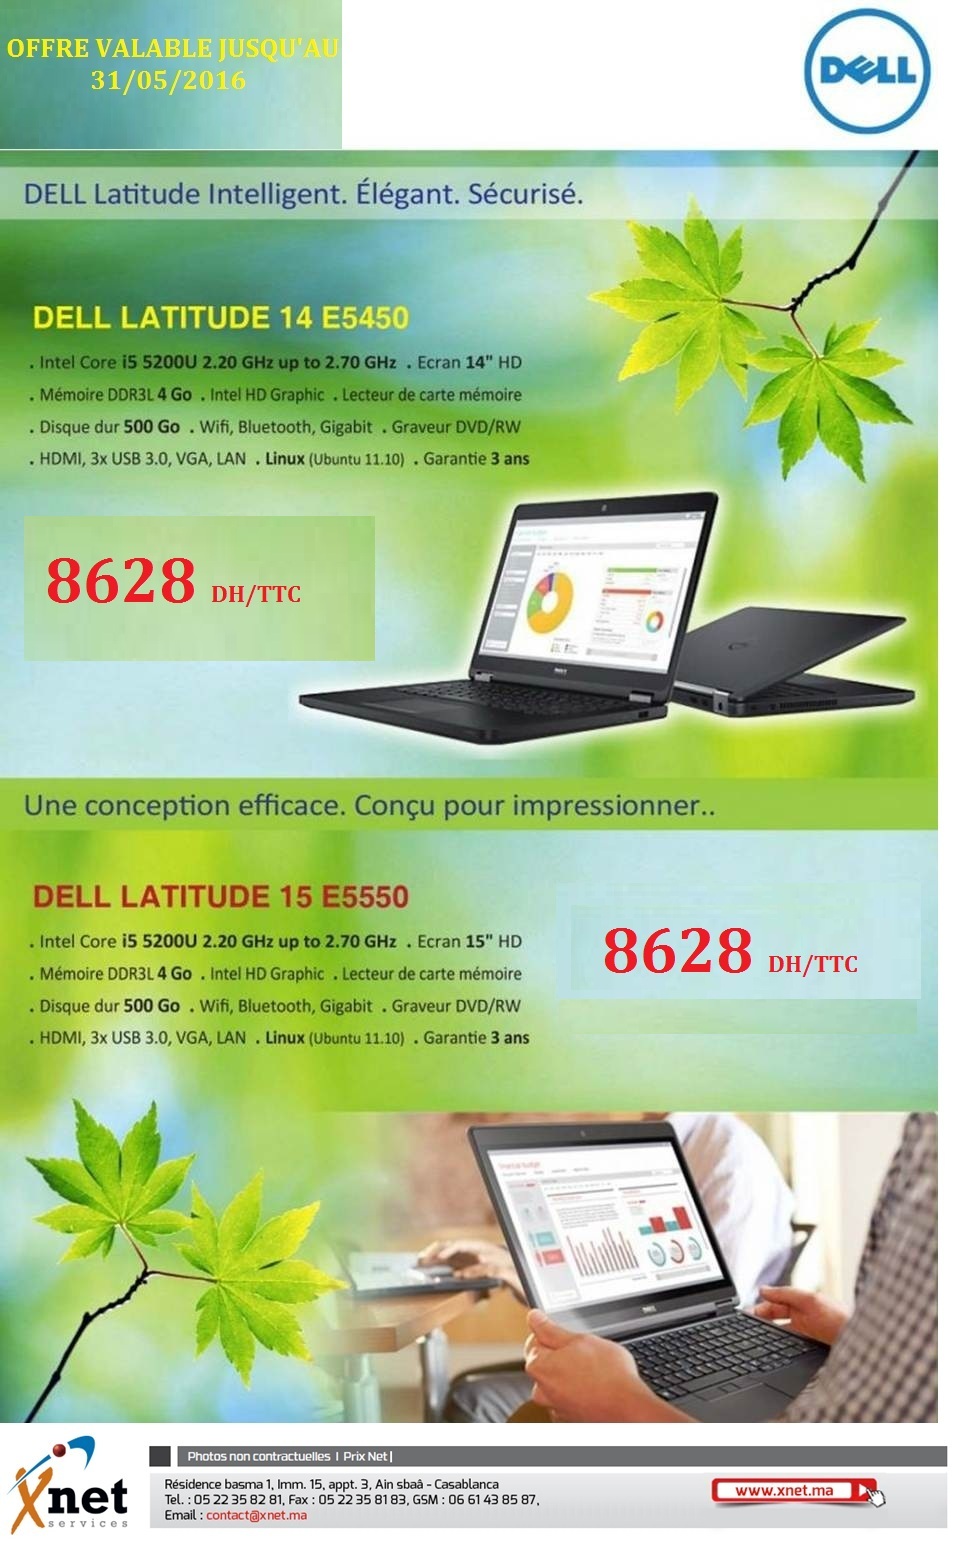 Promo...Dell latitude series